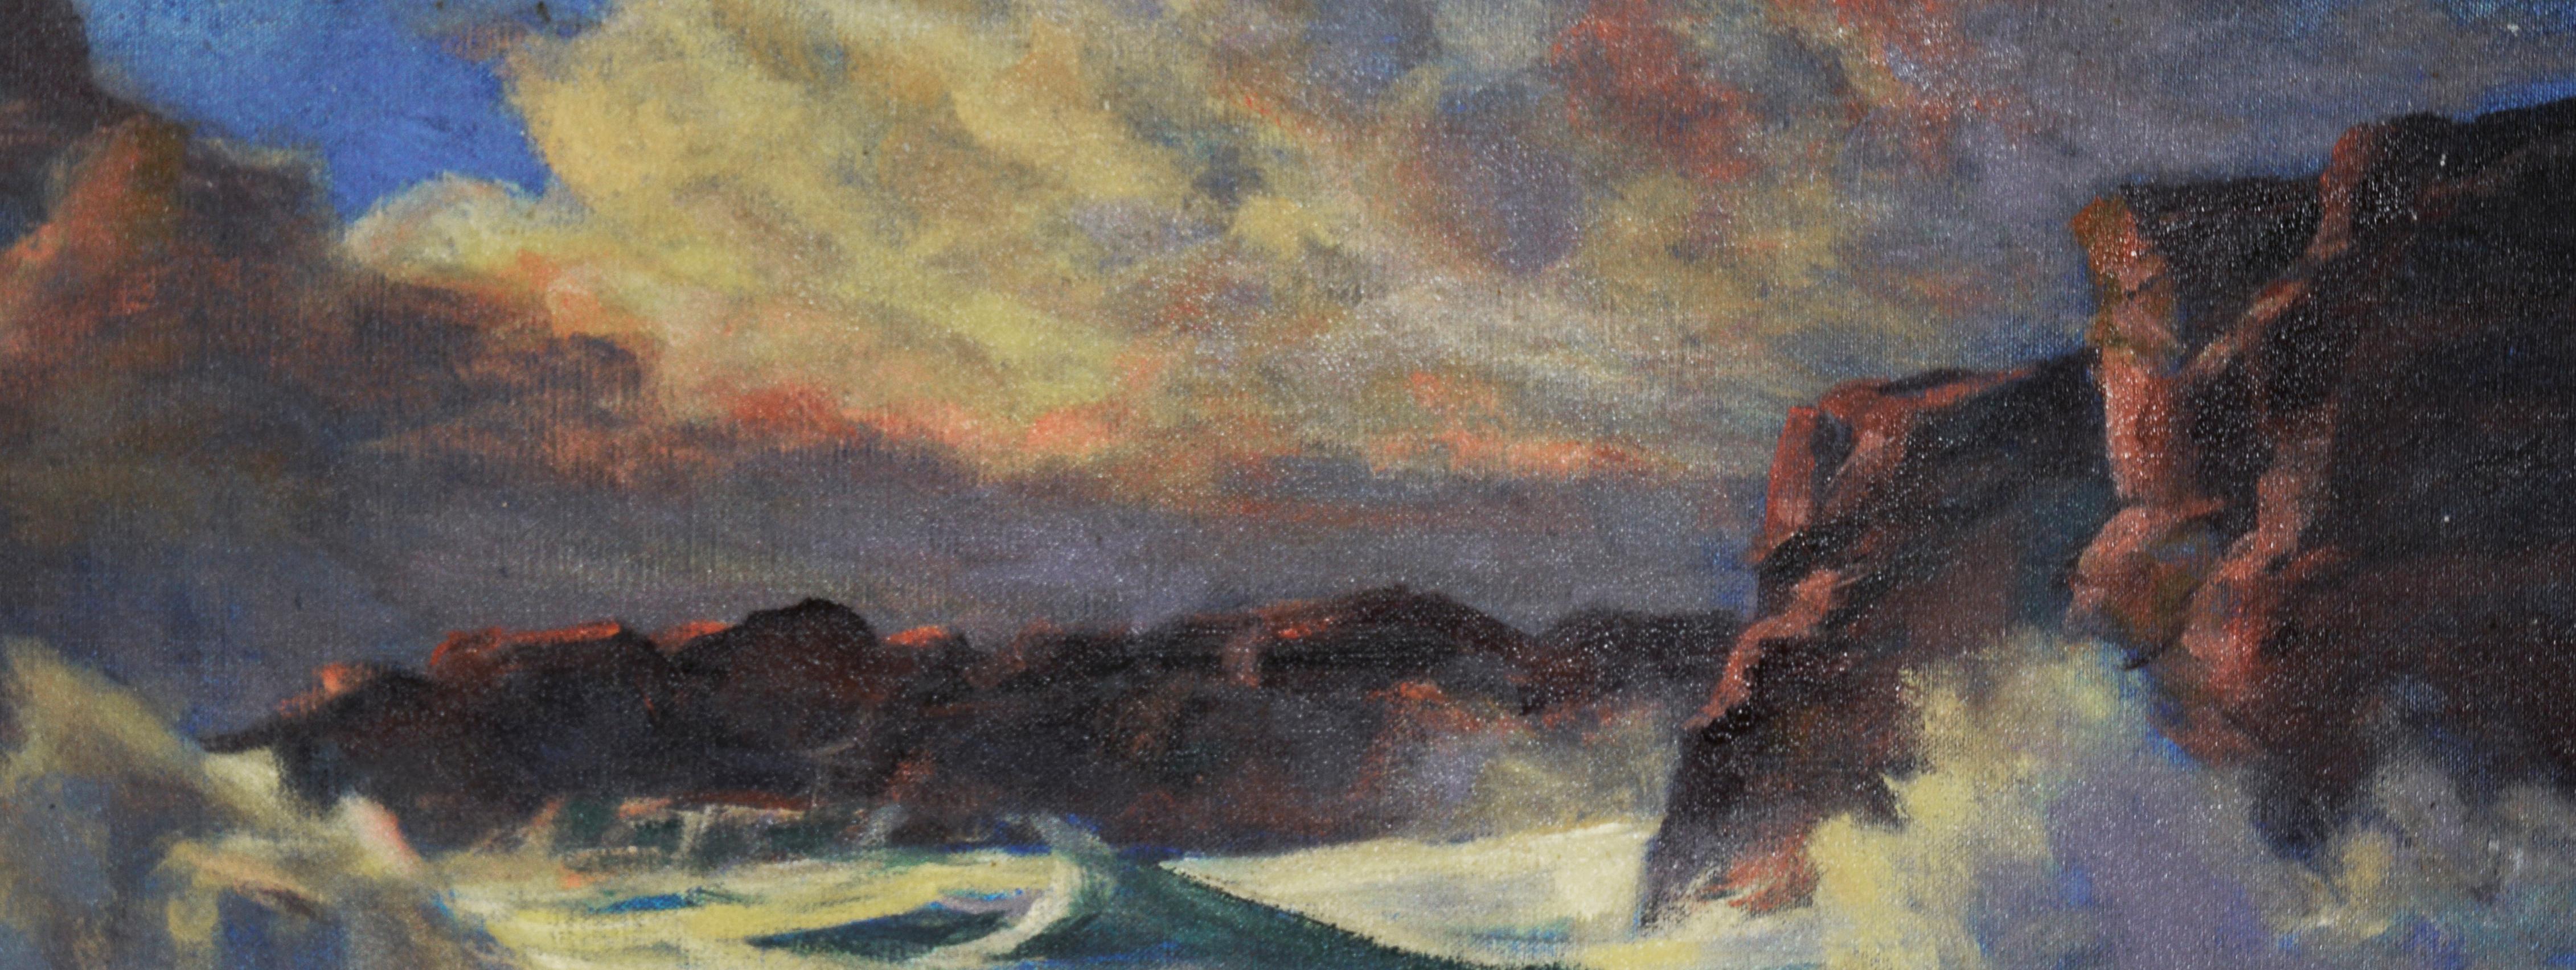 Against The Tide im Stil von Edgar Alwin Payne – Öl auf Leinen  (Amerikanischer Impressionismus), Painting, von Unknown